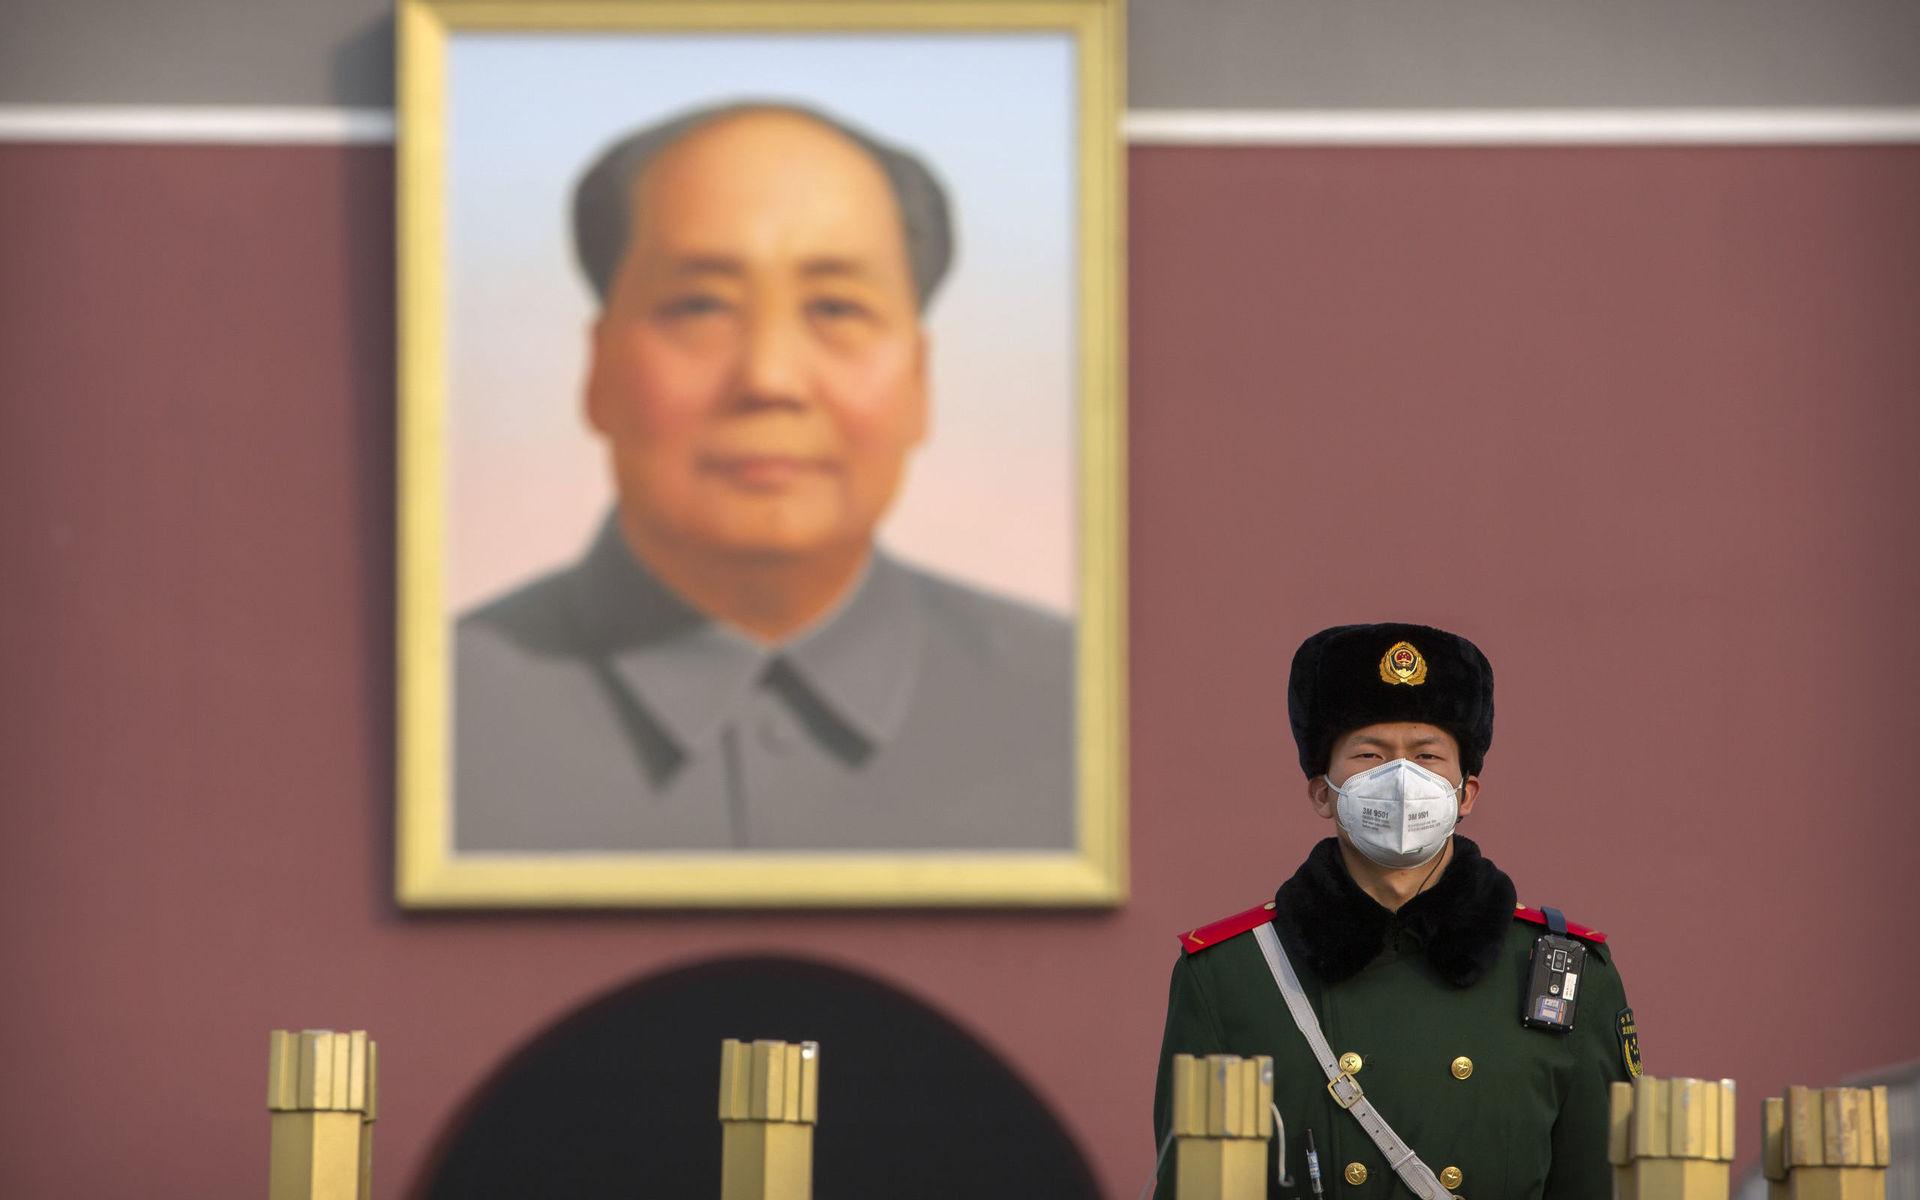 Nutid i Kina. En polisman med munskydd framför en bild av Mao Zedong.